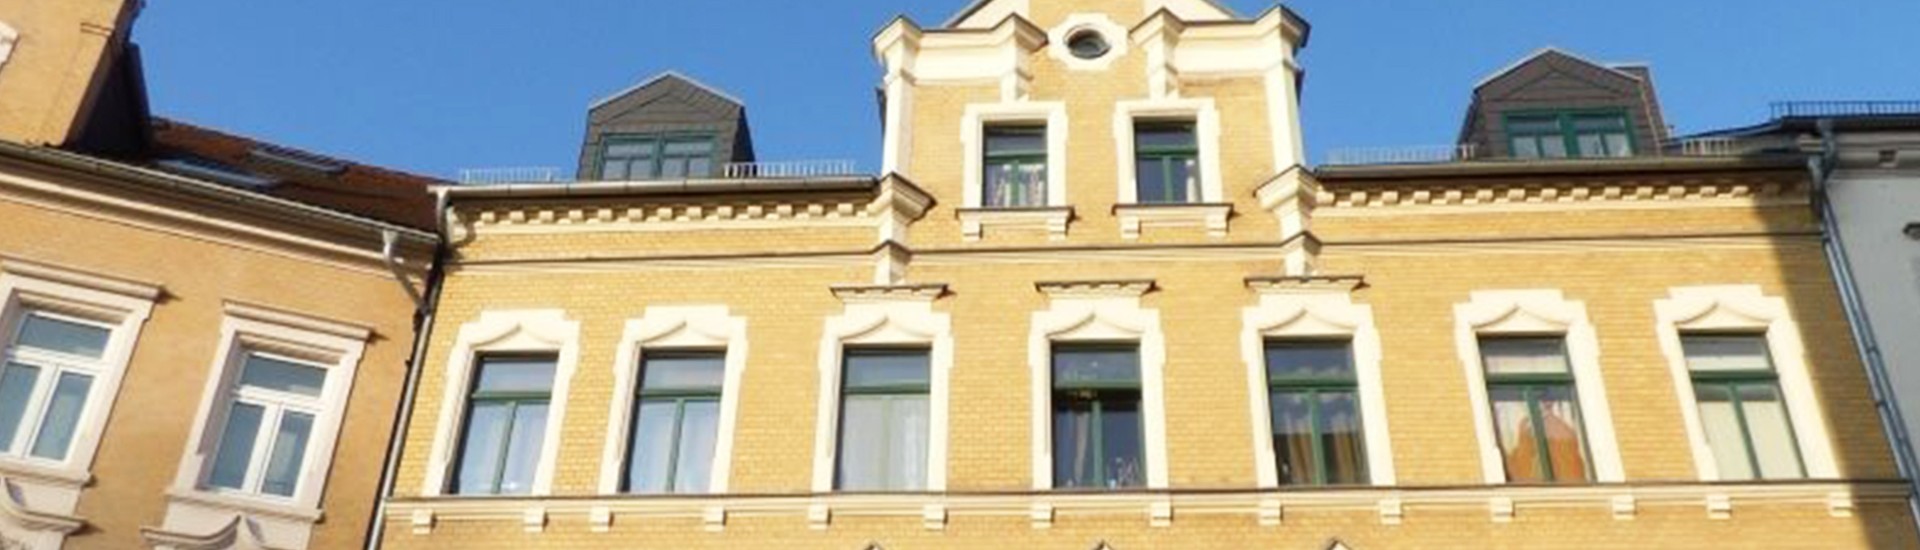 Mehrfamilienhaus-chemnitz-investmentimmobilie-banner.jpg
				